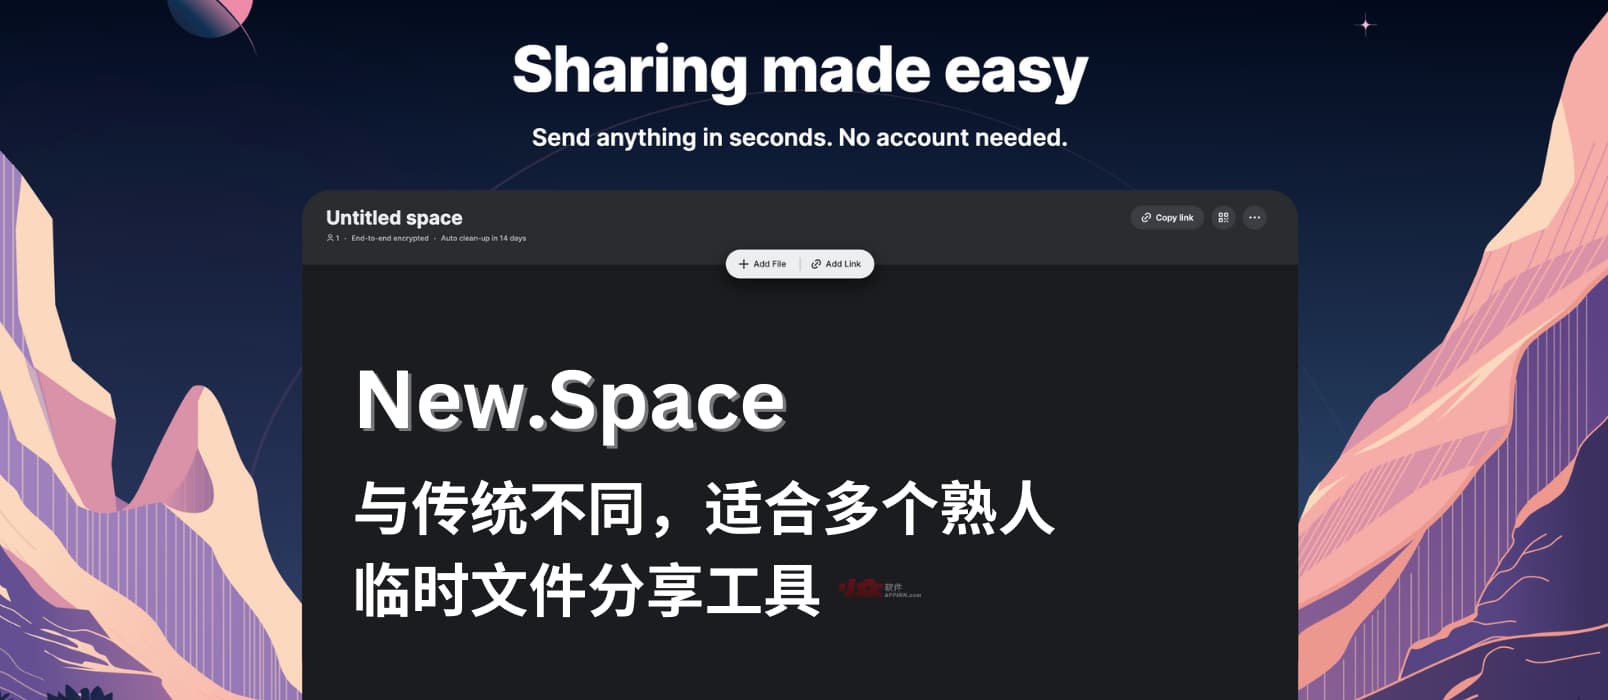 New.Space – 免注册多人临时文件分享工具｜与传统文件分享方式不太一样